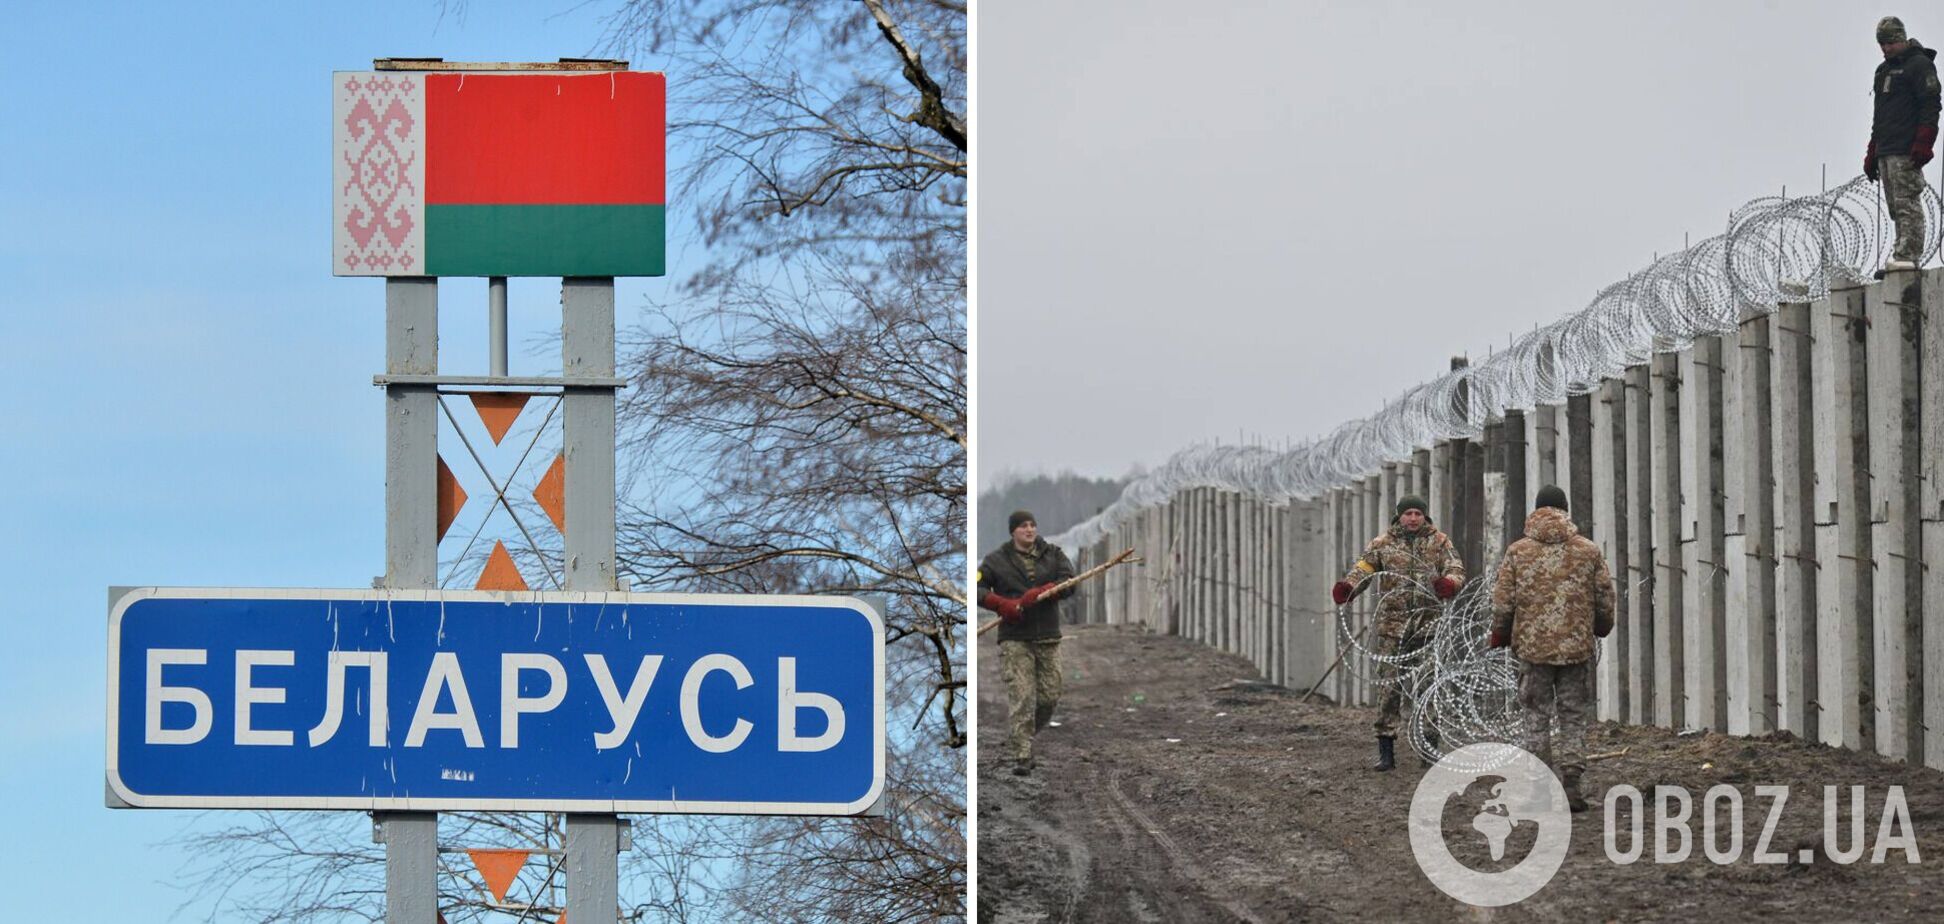 В Беларуси высказали недовольство тем, что Украина укрепляет свою границу